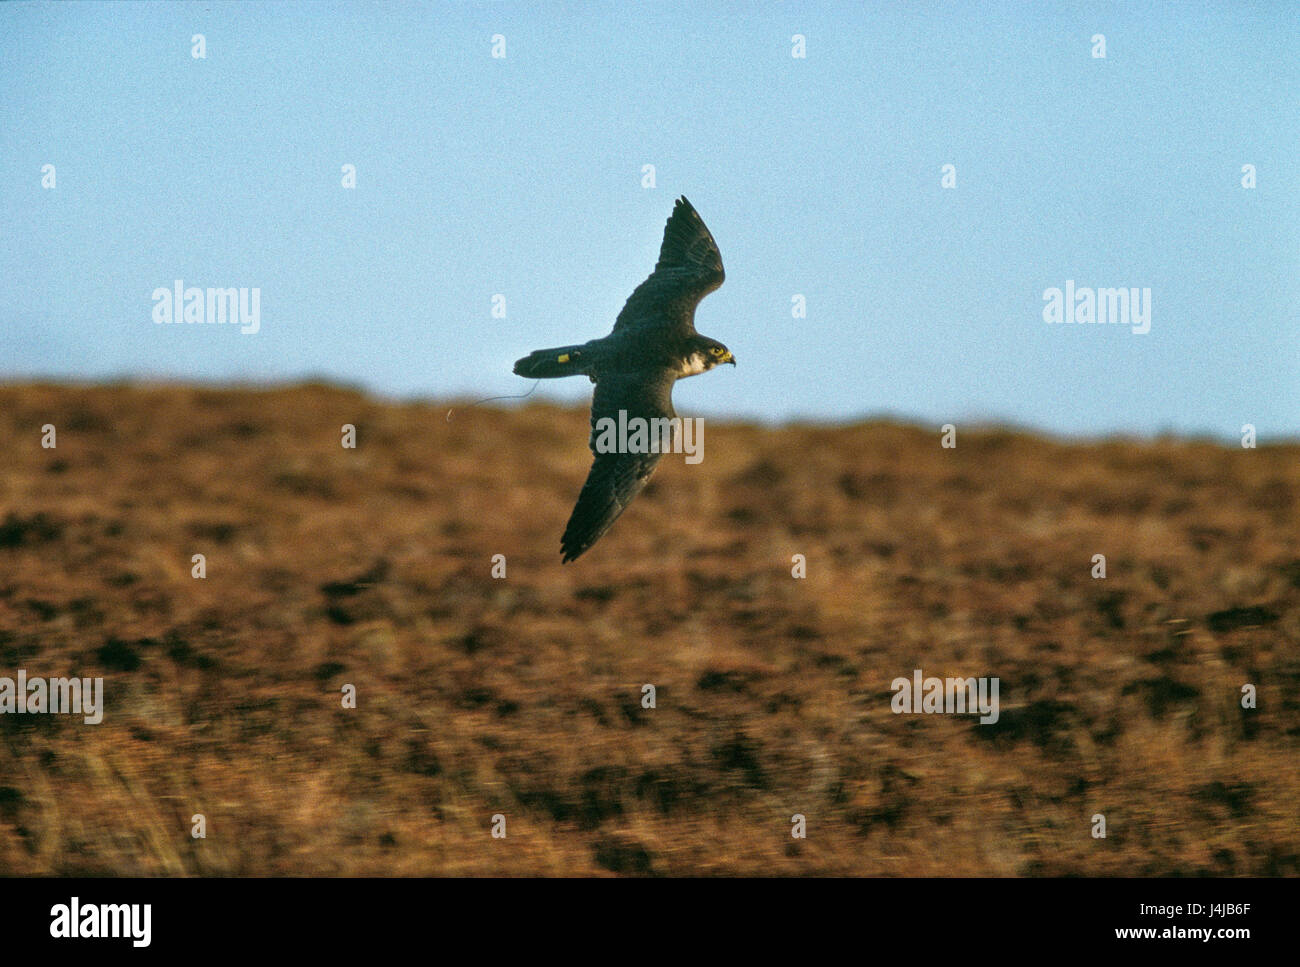 Einem Falken im Flug über Heide in Gleneagles, Schottland gesehen. Derek Hudson / Alamy Stock Foto Stockfoto